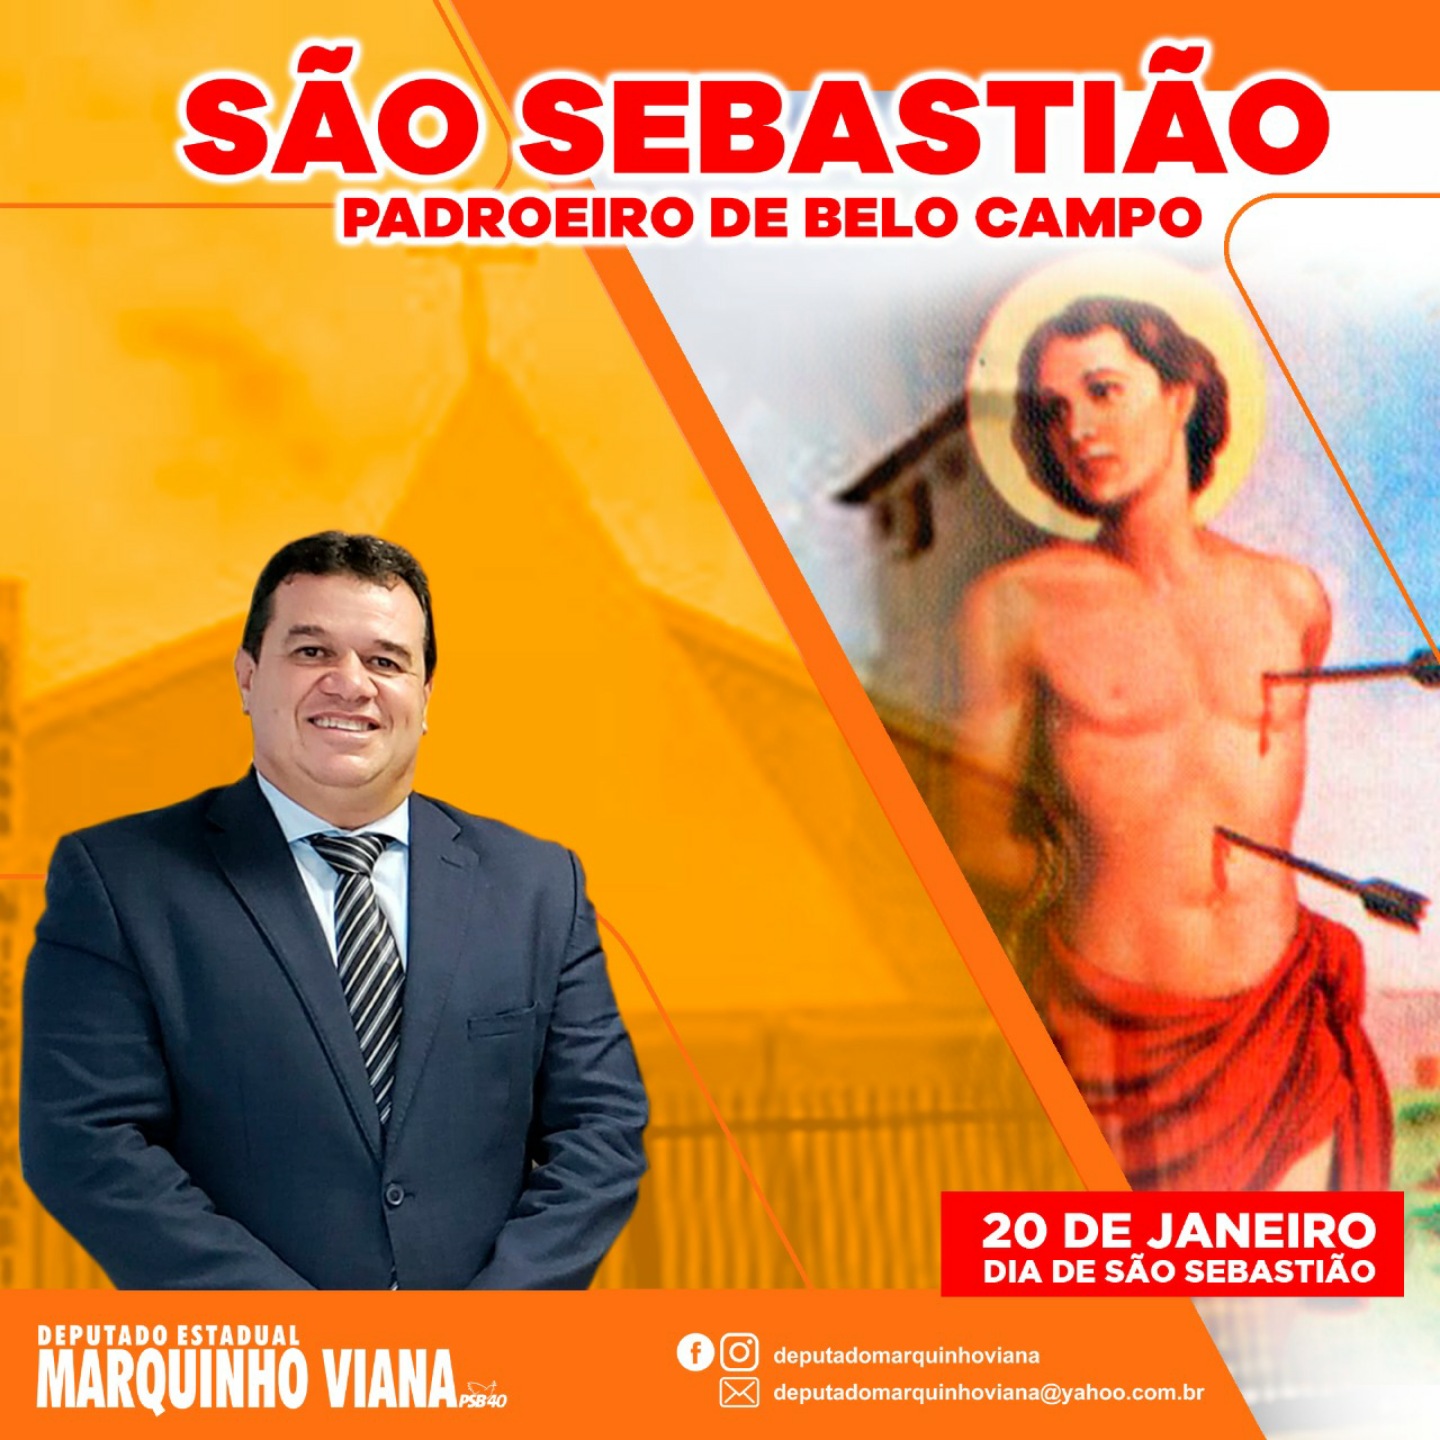 Deputado Marquinho Viana saúda São Sebastião, padroeiro de Belo Campo